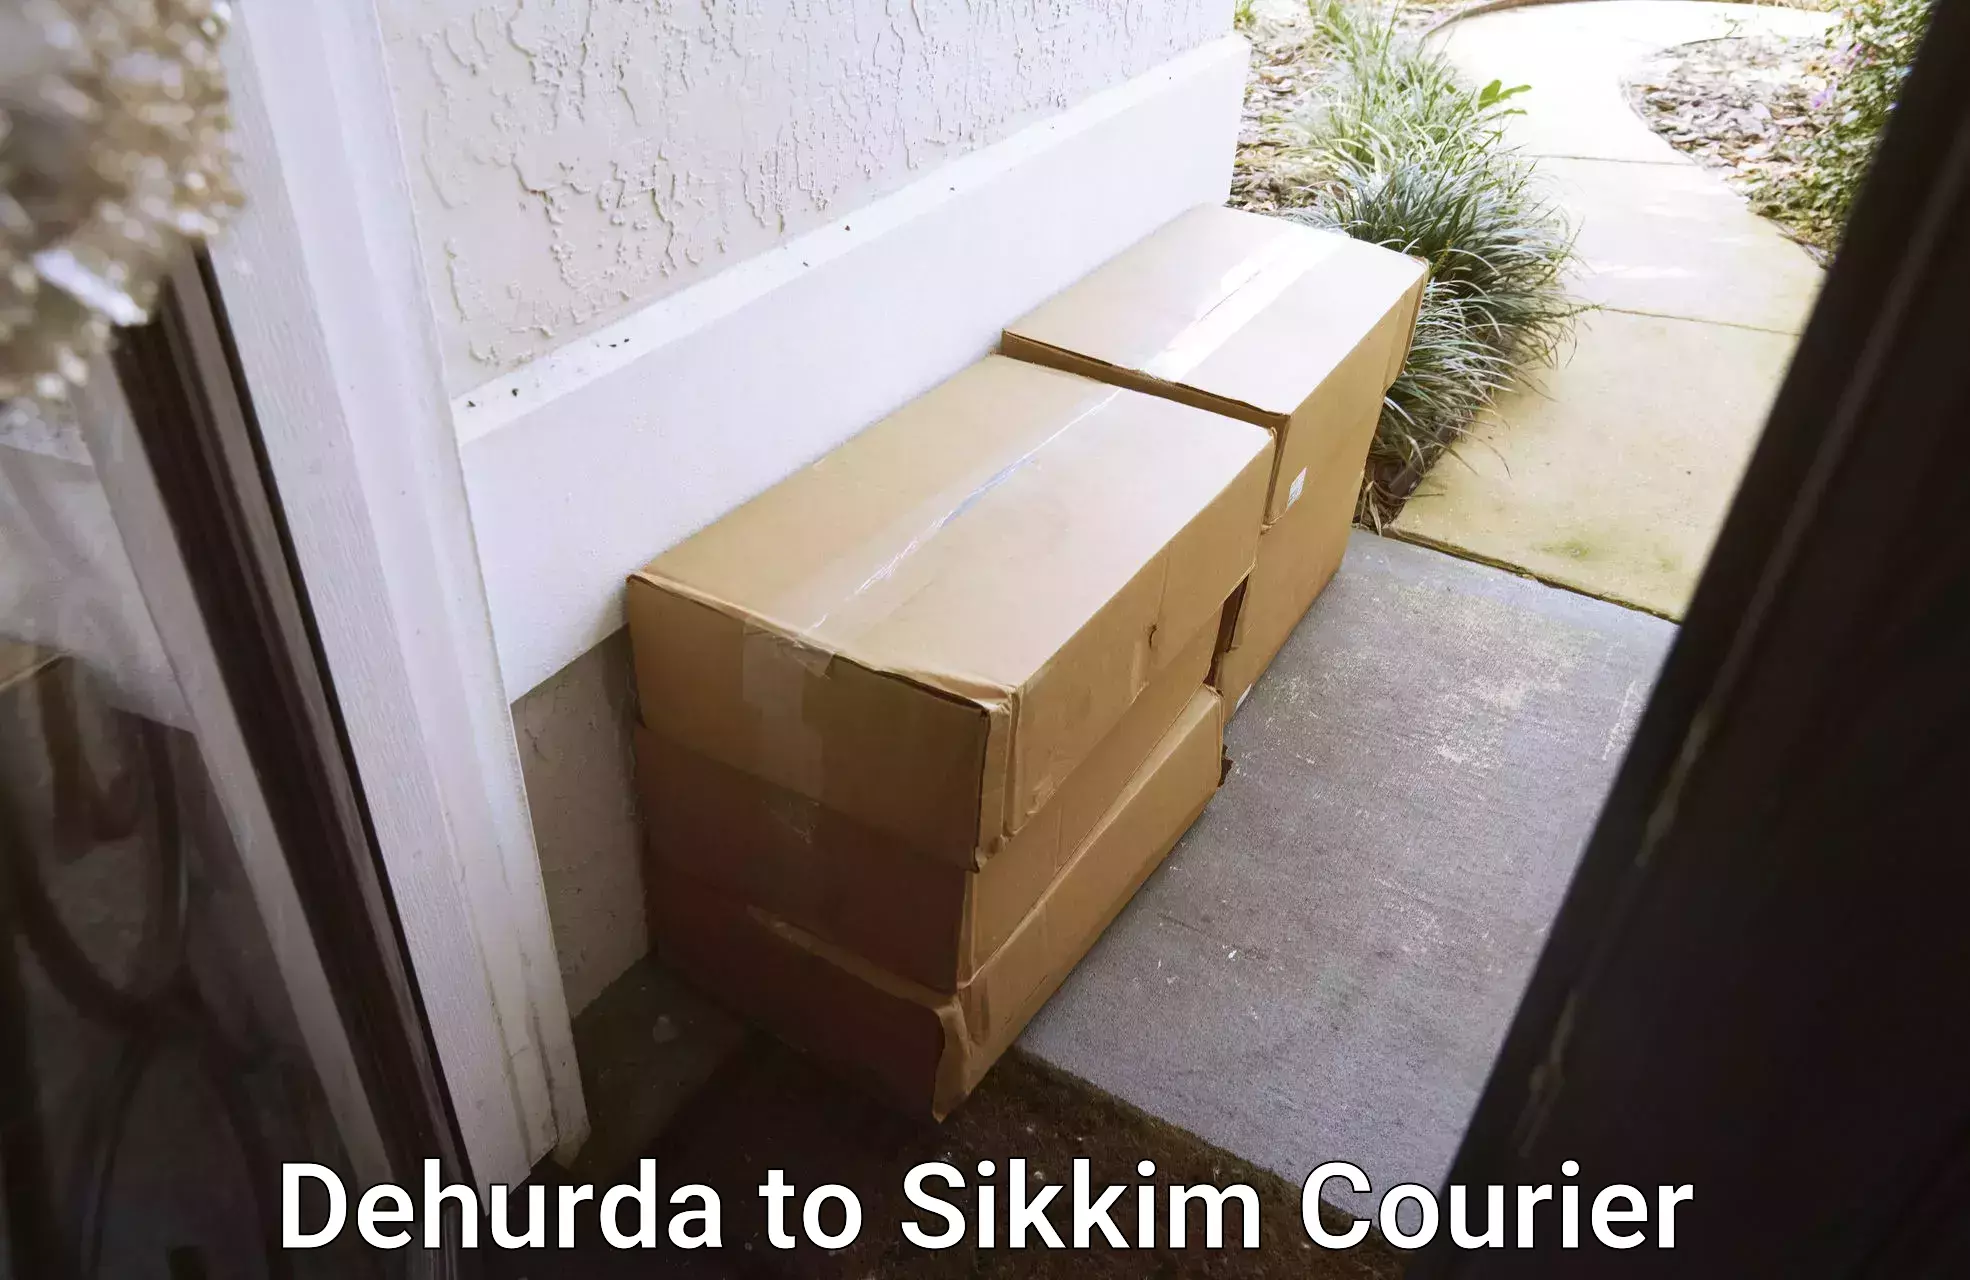 Cost-effective courier options Dehurda to Sikkim